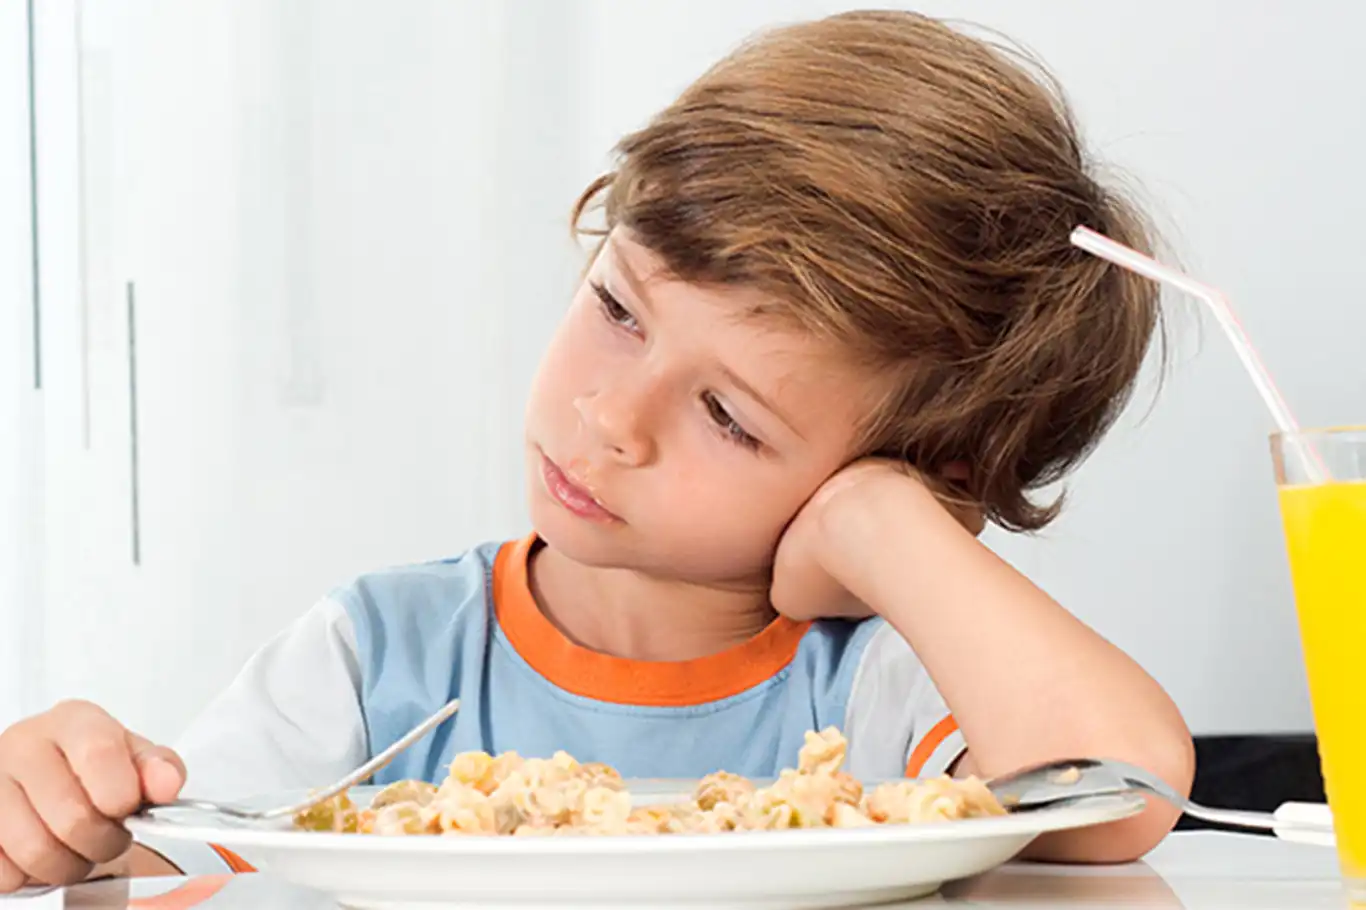 Ailelere altın öneriler: Çocuklar neden yemek seçer, ne yapılması gerekir?